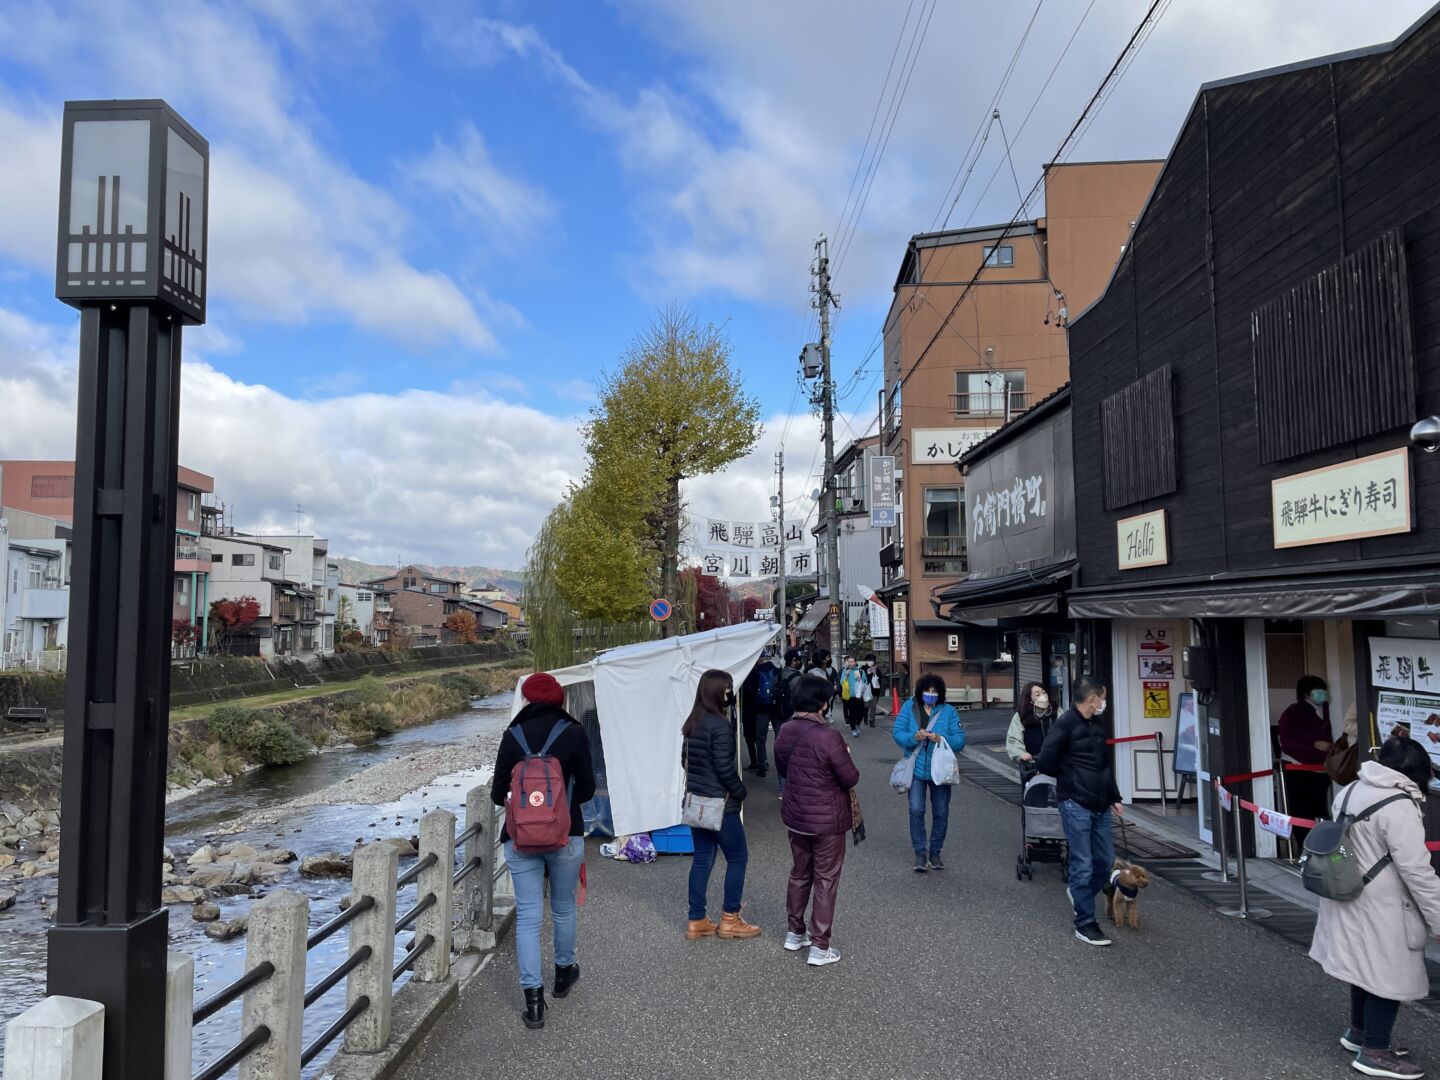 à esqueda da foto, o rio de Takayama e em frente, o mercado de rua e as lojinhas da cidade.